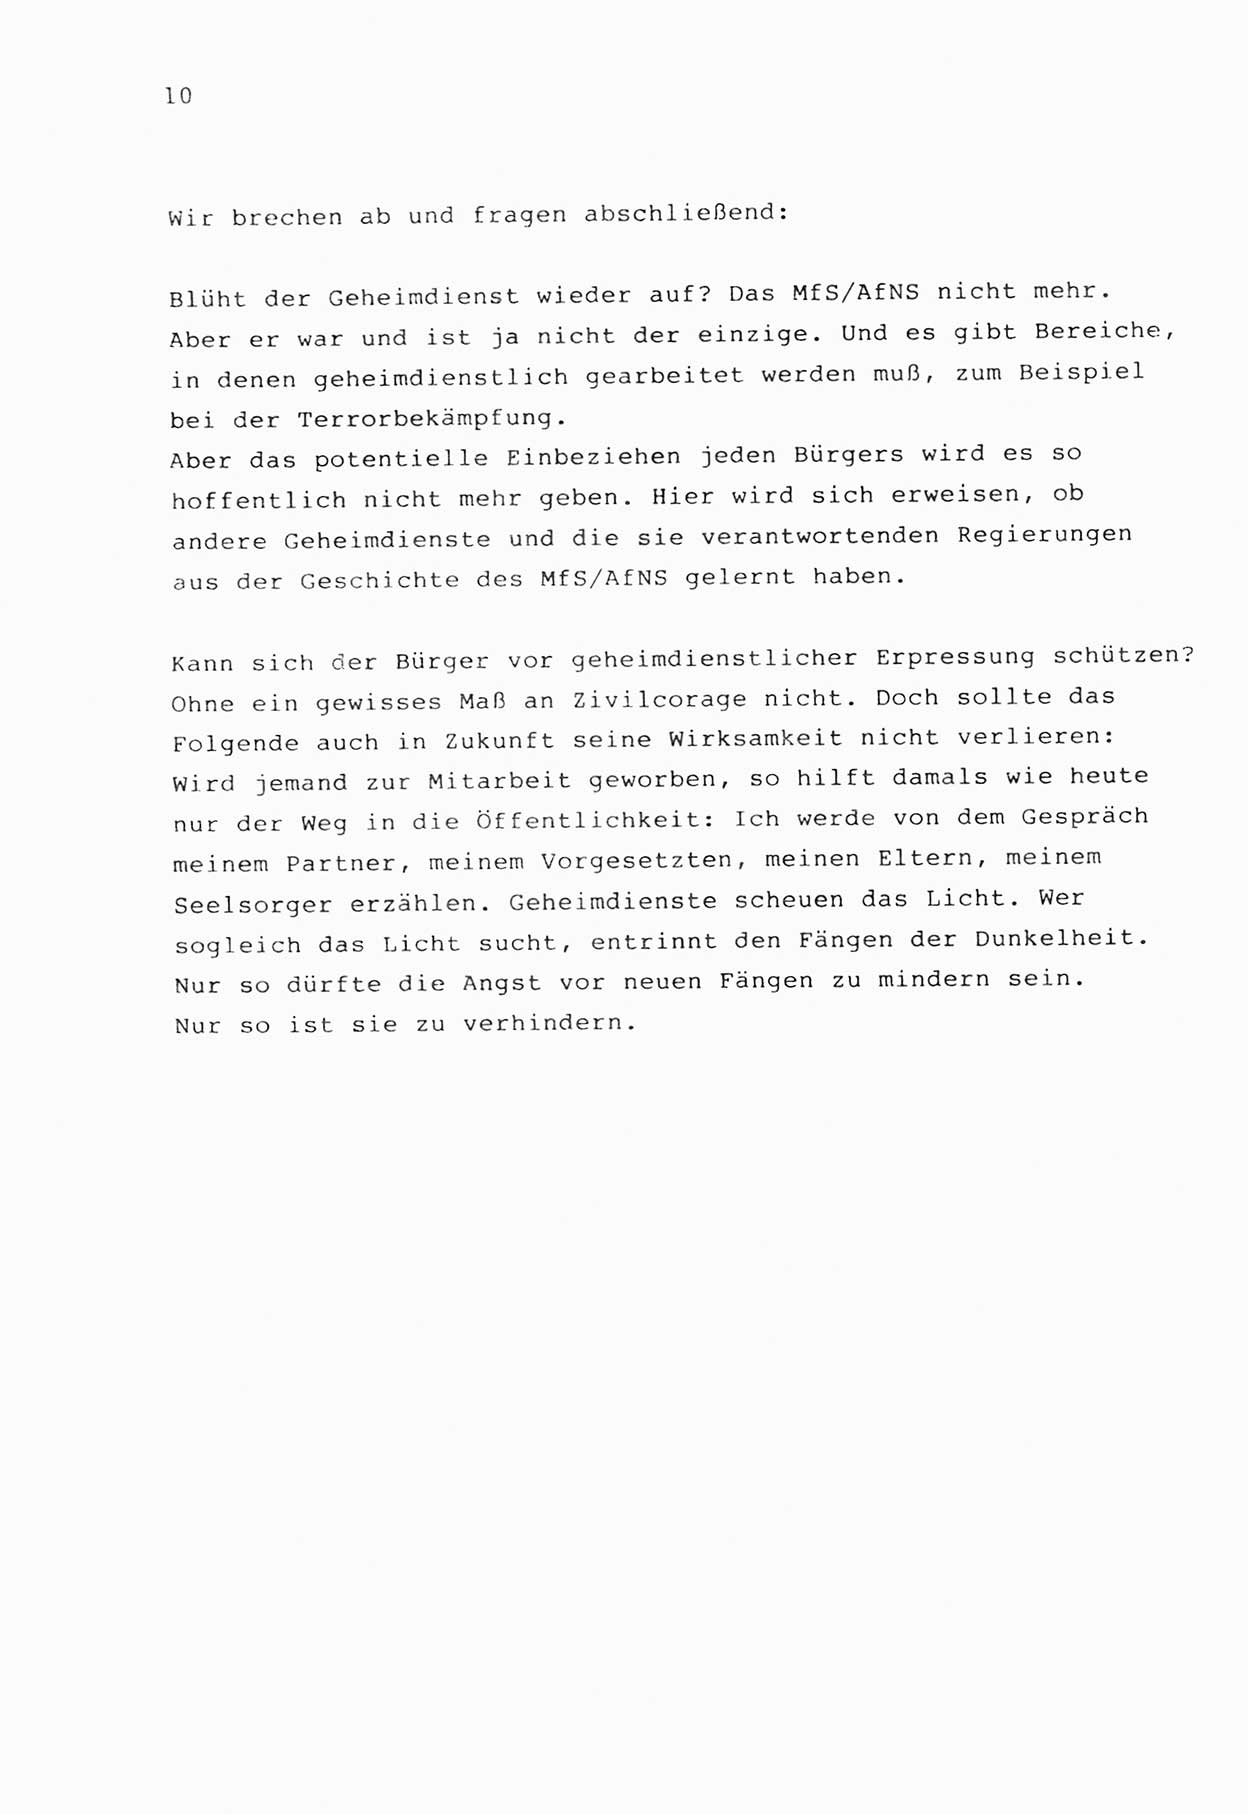 Zwie-Gespräch, Beiträge zur Bewältigung der Stasi-Vergangenheit [Deutsche Demokratische Republik (DDR)], Ausgabe Nr. 1, Berlin 1991, Seite 10 (Zwie-Gespr. Ausg. 1 1991, S. 10)